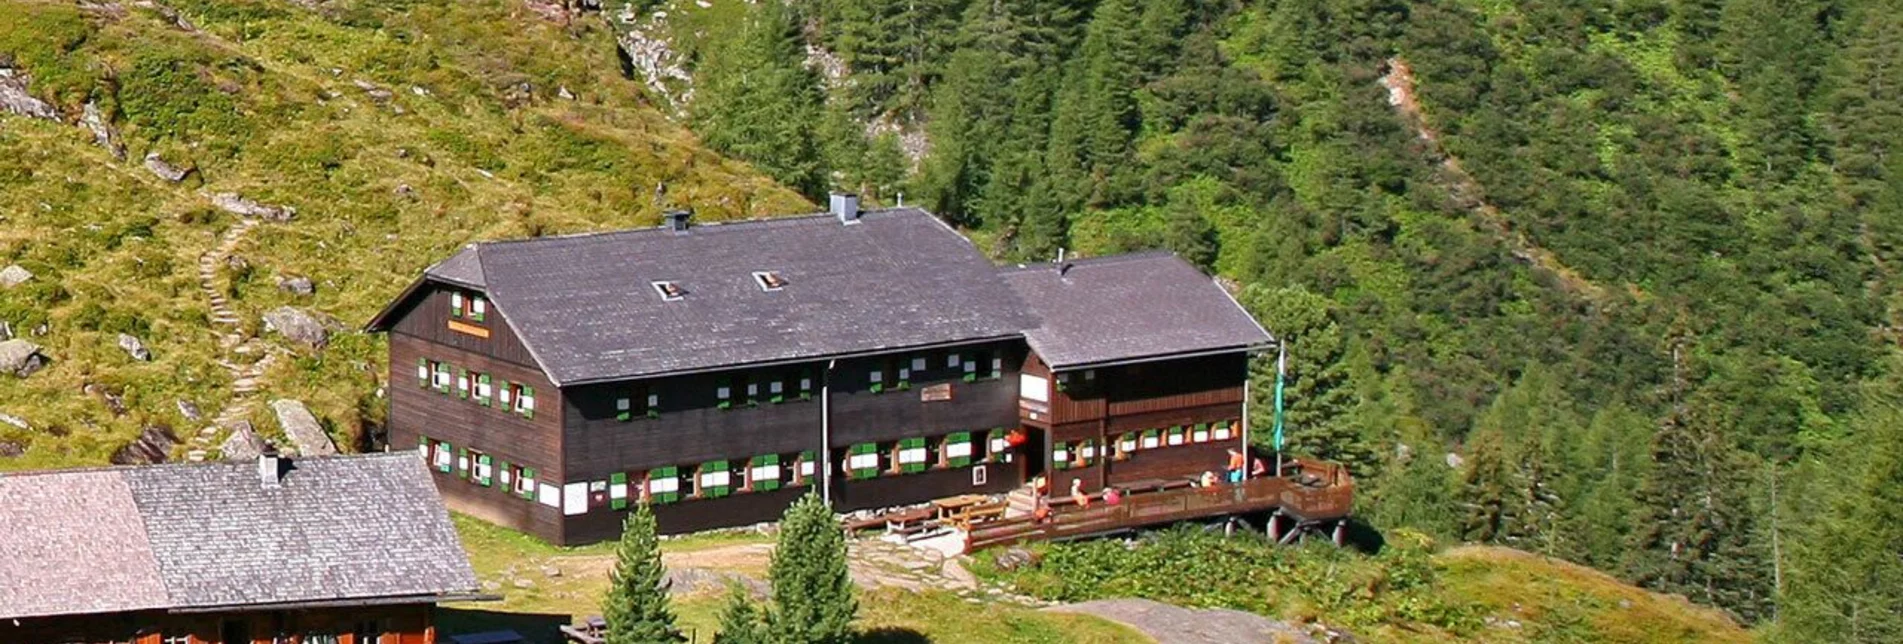 Bergtour Preintalerhütte - Putzentalalm | Schladminger Tauern Höhenweg Alternative - Touren-Impression #1 | © Erlebnisregion Schladming-Dachstein